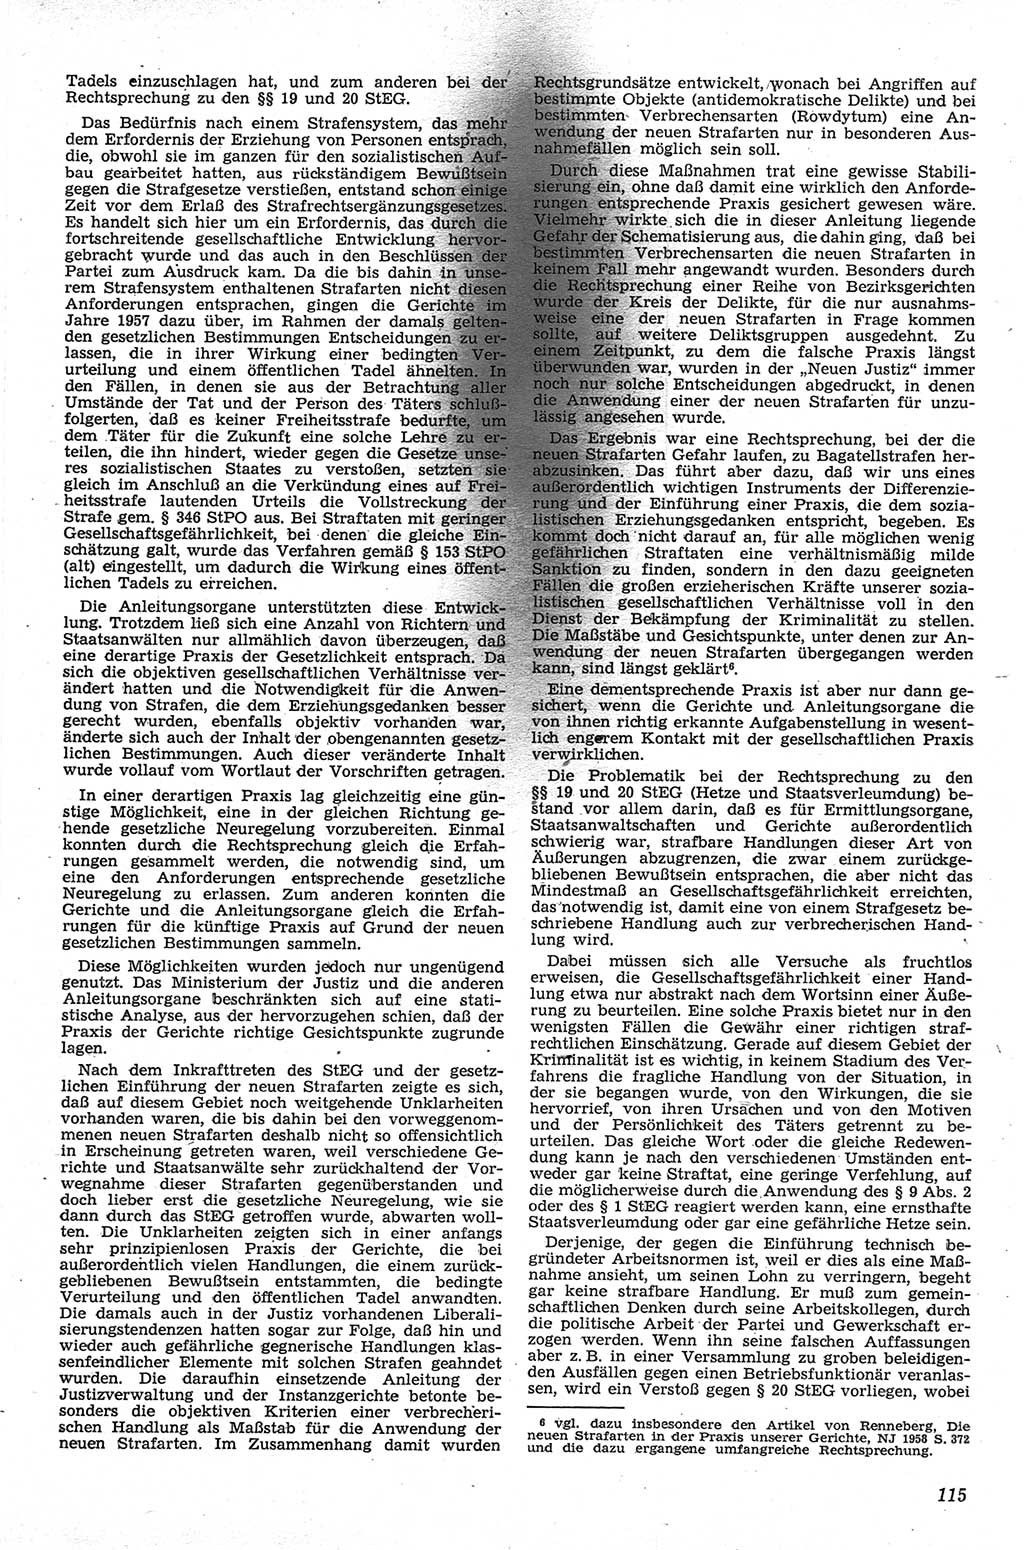 Neue Justiz (NJ), Zeitschrift für Recht und Rechtswissenschaft [Deutsche Demokratische Republik (DDR)], 13. Jahrgang 1959, Seite 115 (NJ DDR 1959, S. 115)